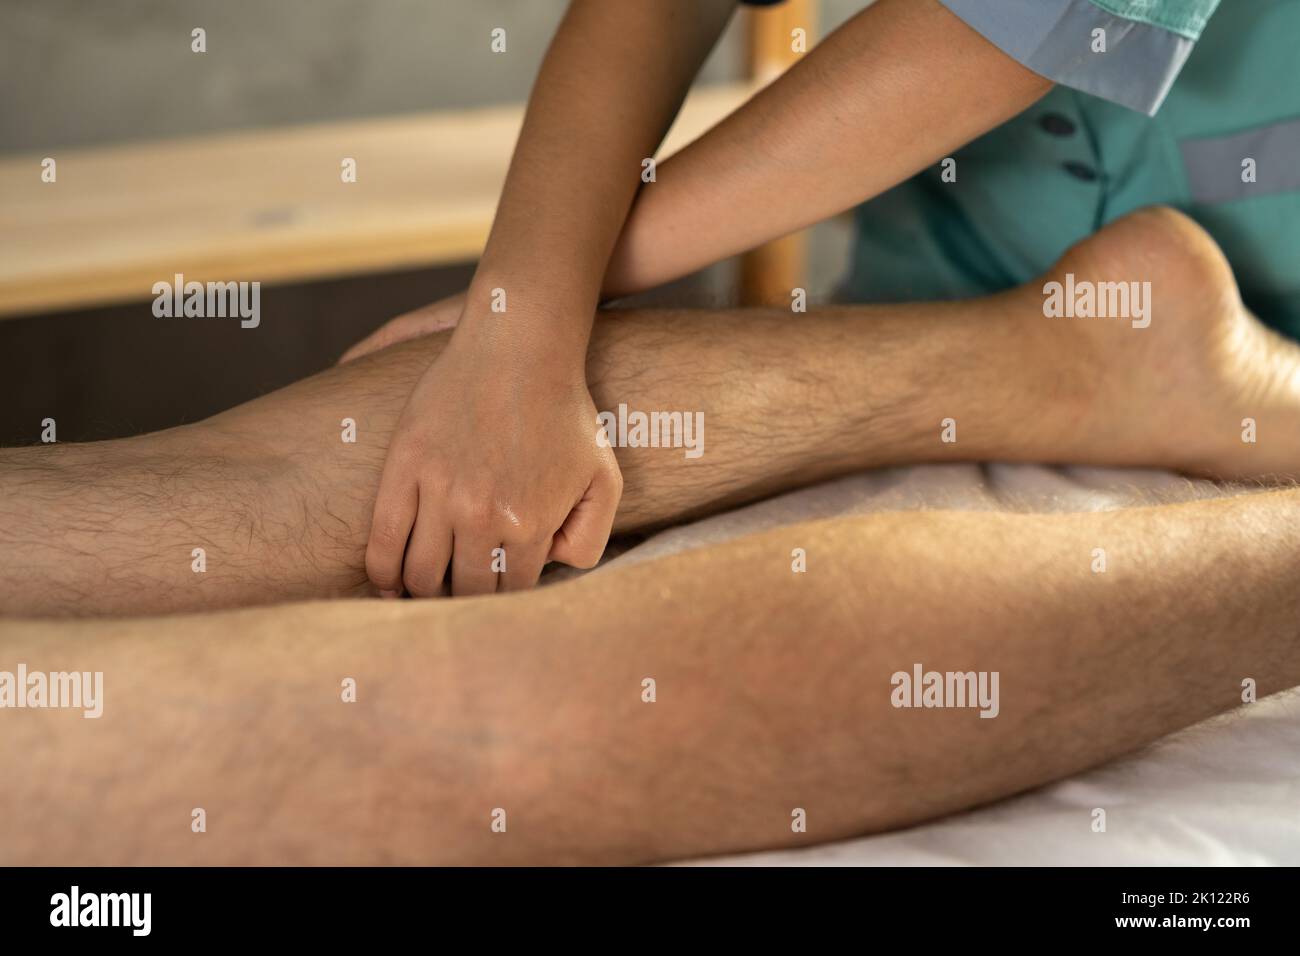 Sportmassage. Physiotherapeut massiert die Beine eines jungen männlichen Athleten. Therapeut bei einer Kalbsmassage Stockfoto